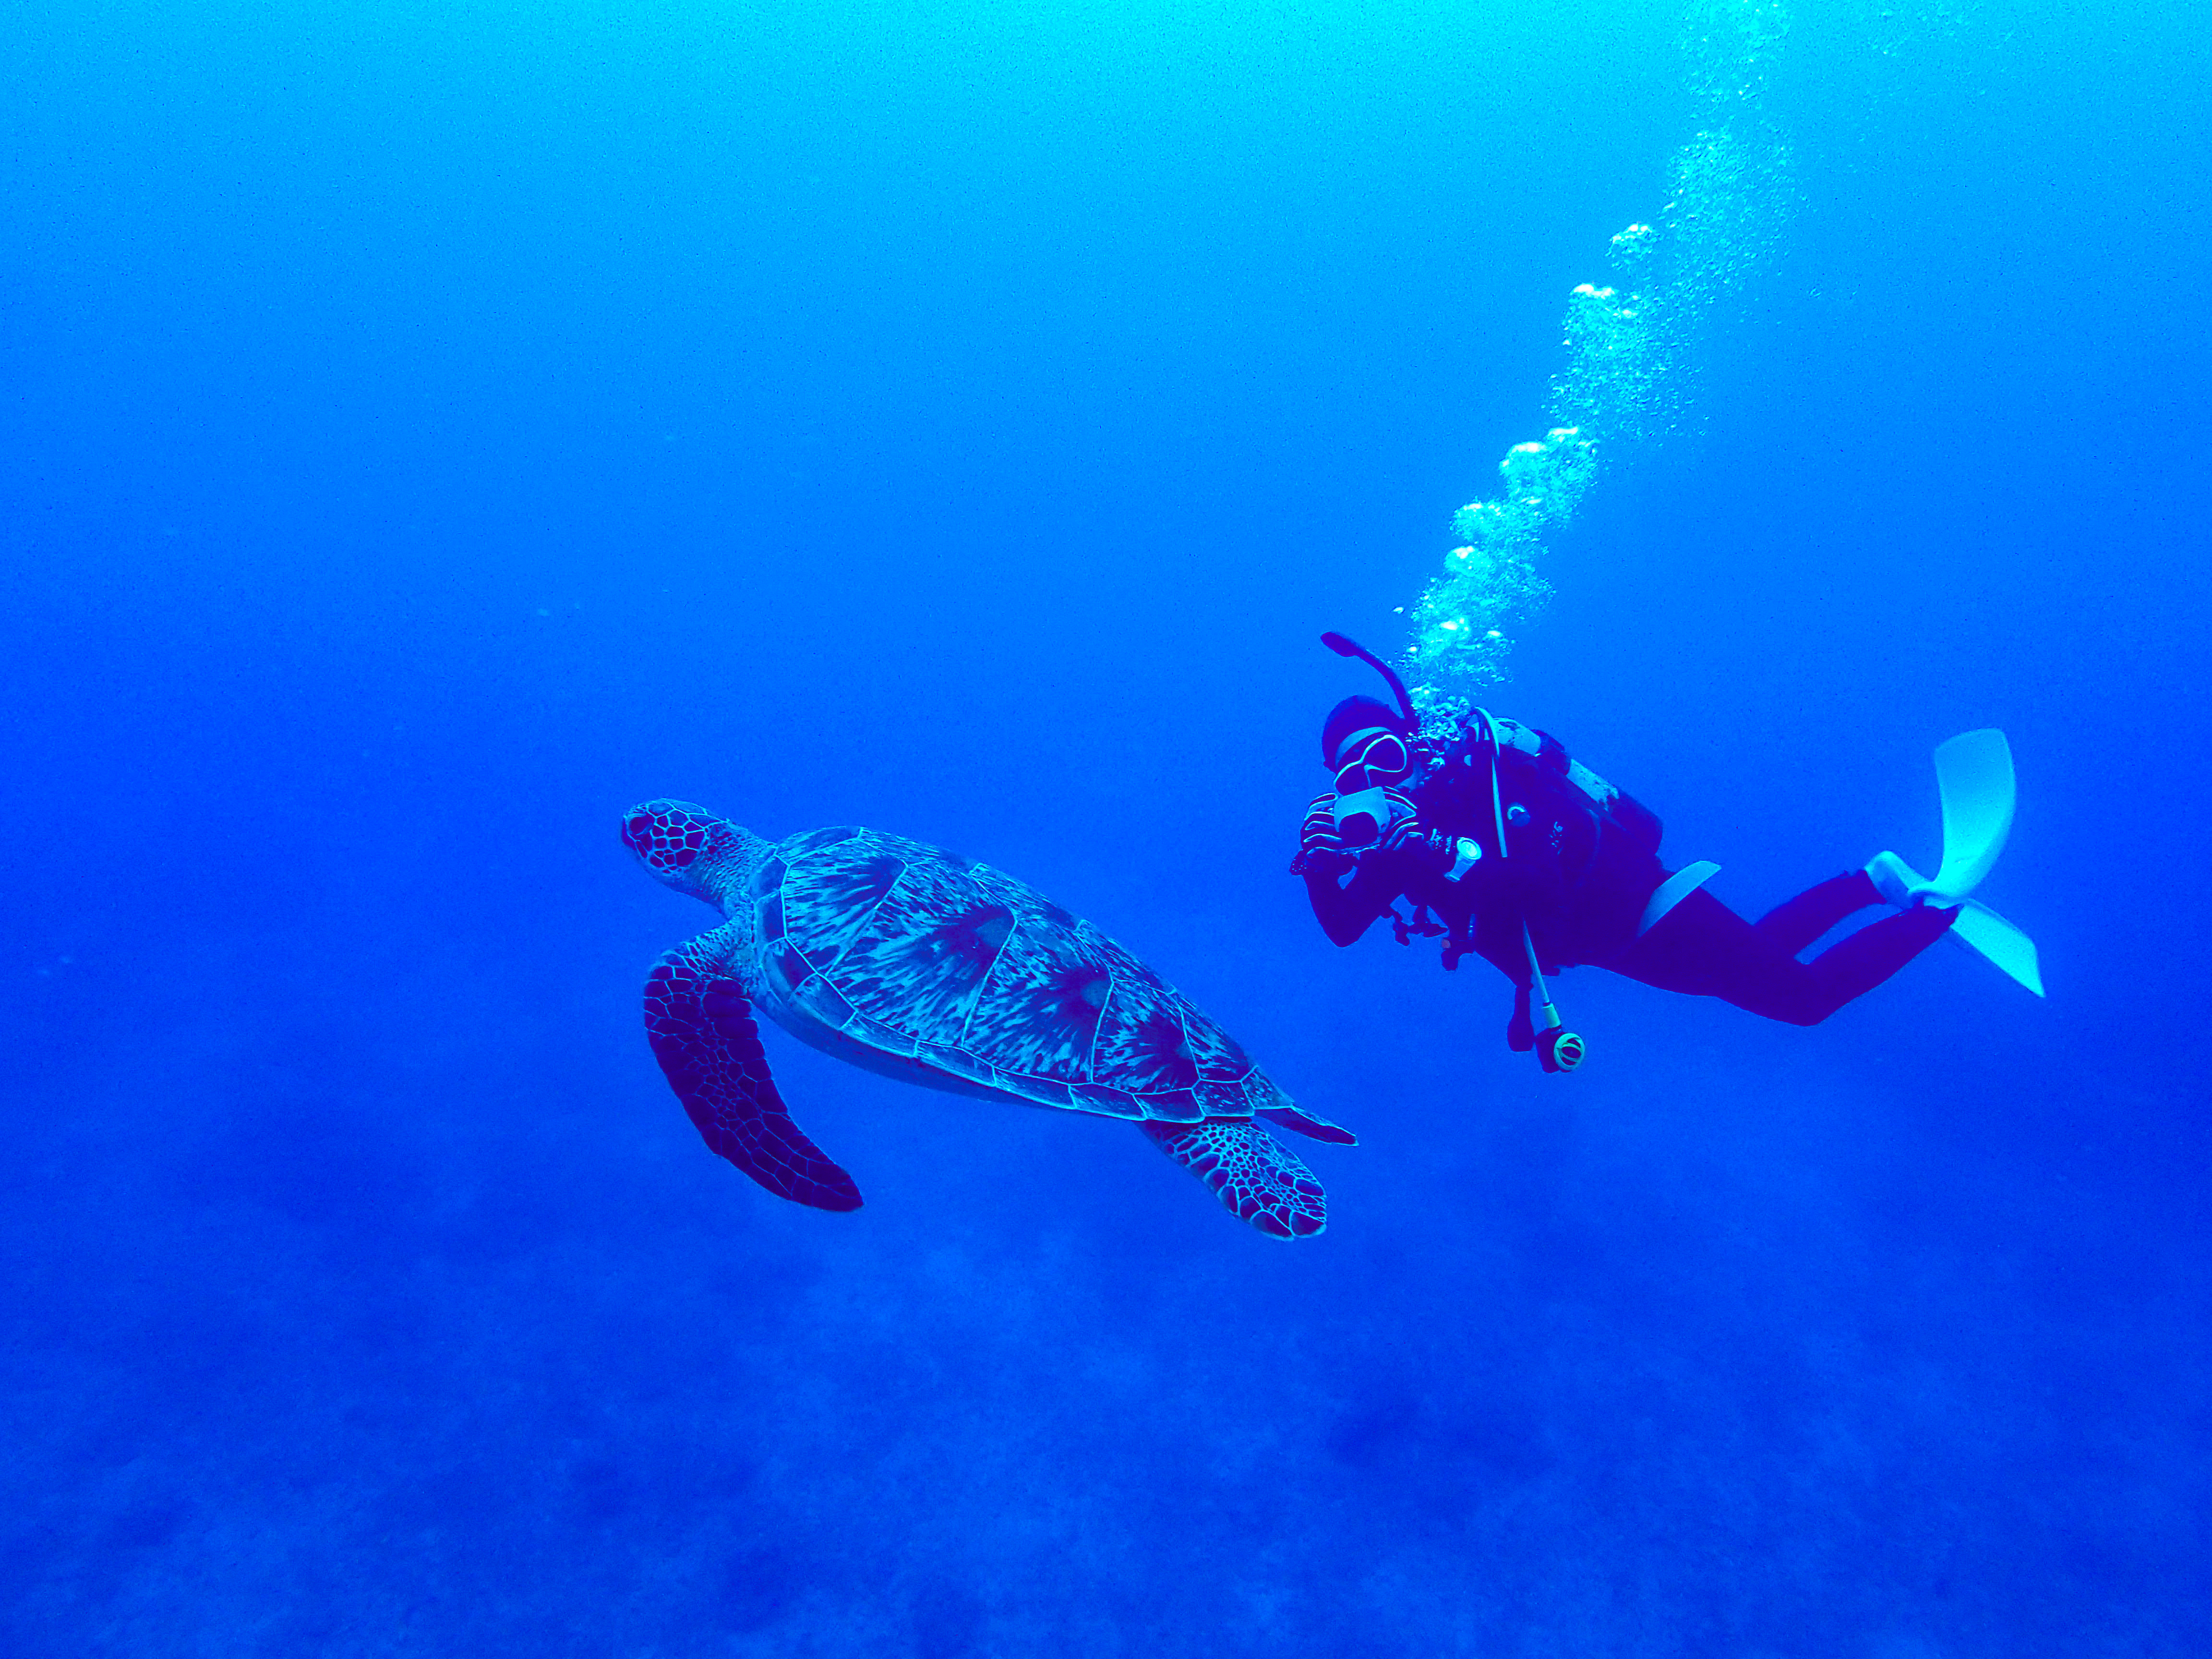 ウミガメスポットでウミガメを撮影するダイバー